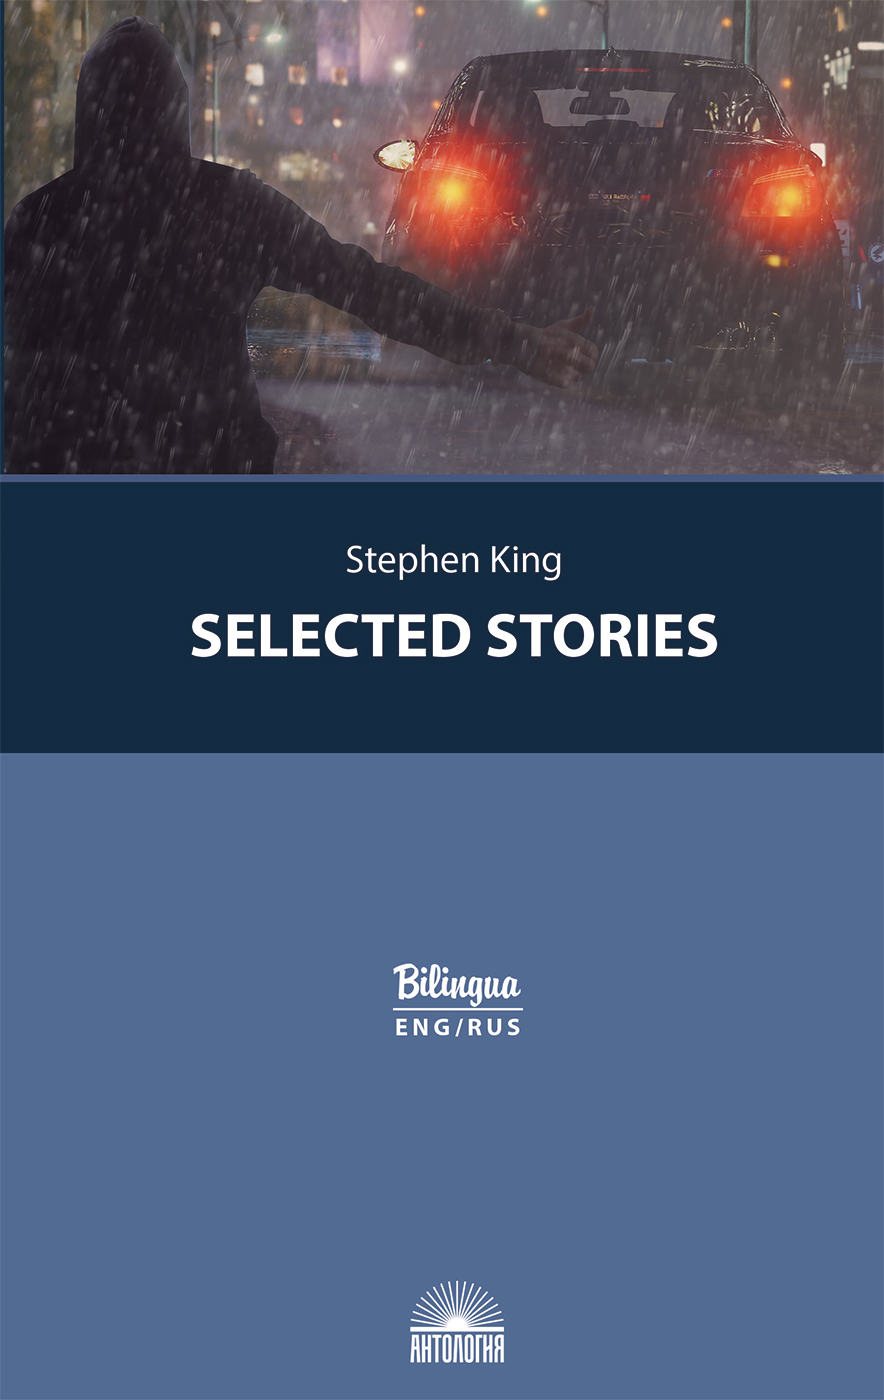 Избранные рассказы (Selected Stories). Изд. с параллельным текстом: на англ. и рус. яз.